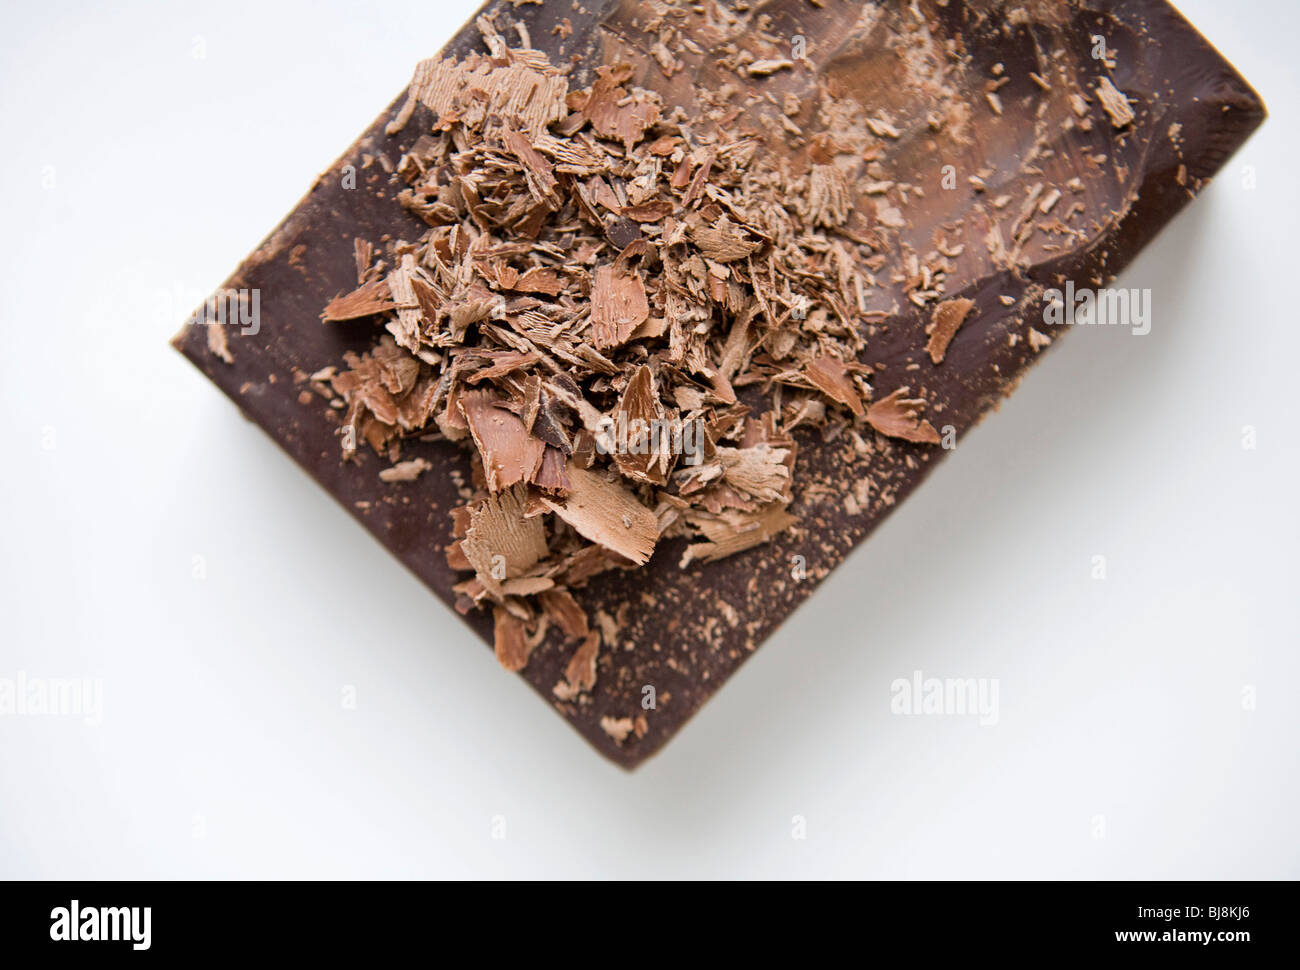 Ein Block von dunkler Schokolade und dunkle Schokolade Späne. Stockfoto